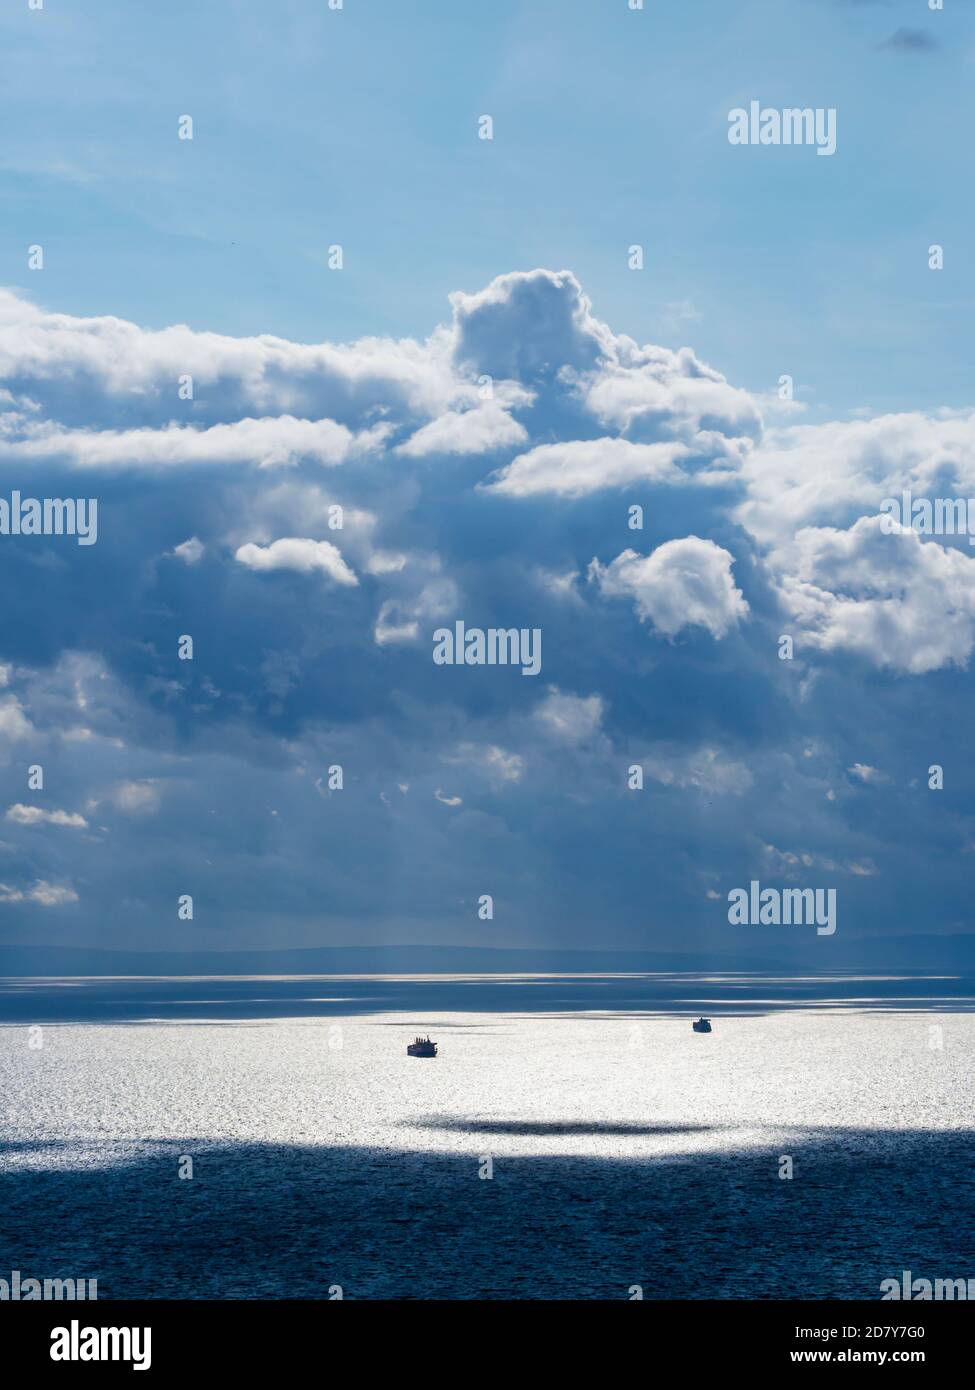 Paysage marin spectaculaire et magnifique, nuages boursouflés et plusieurs silhouetements de navires contre l'horizon forte lumière du soleil lumière du soleil reflet de la surface de la mer Banque D'Images